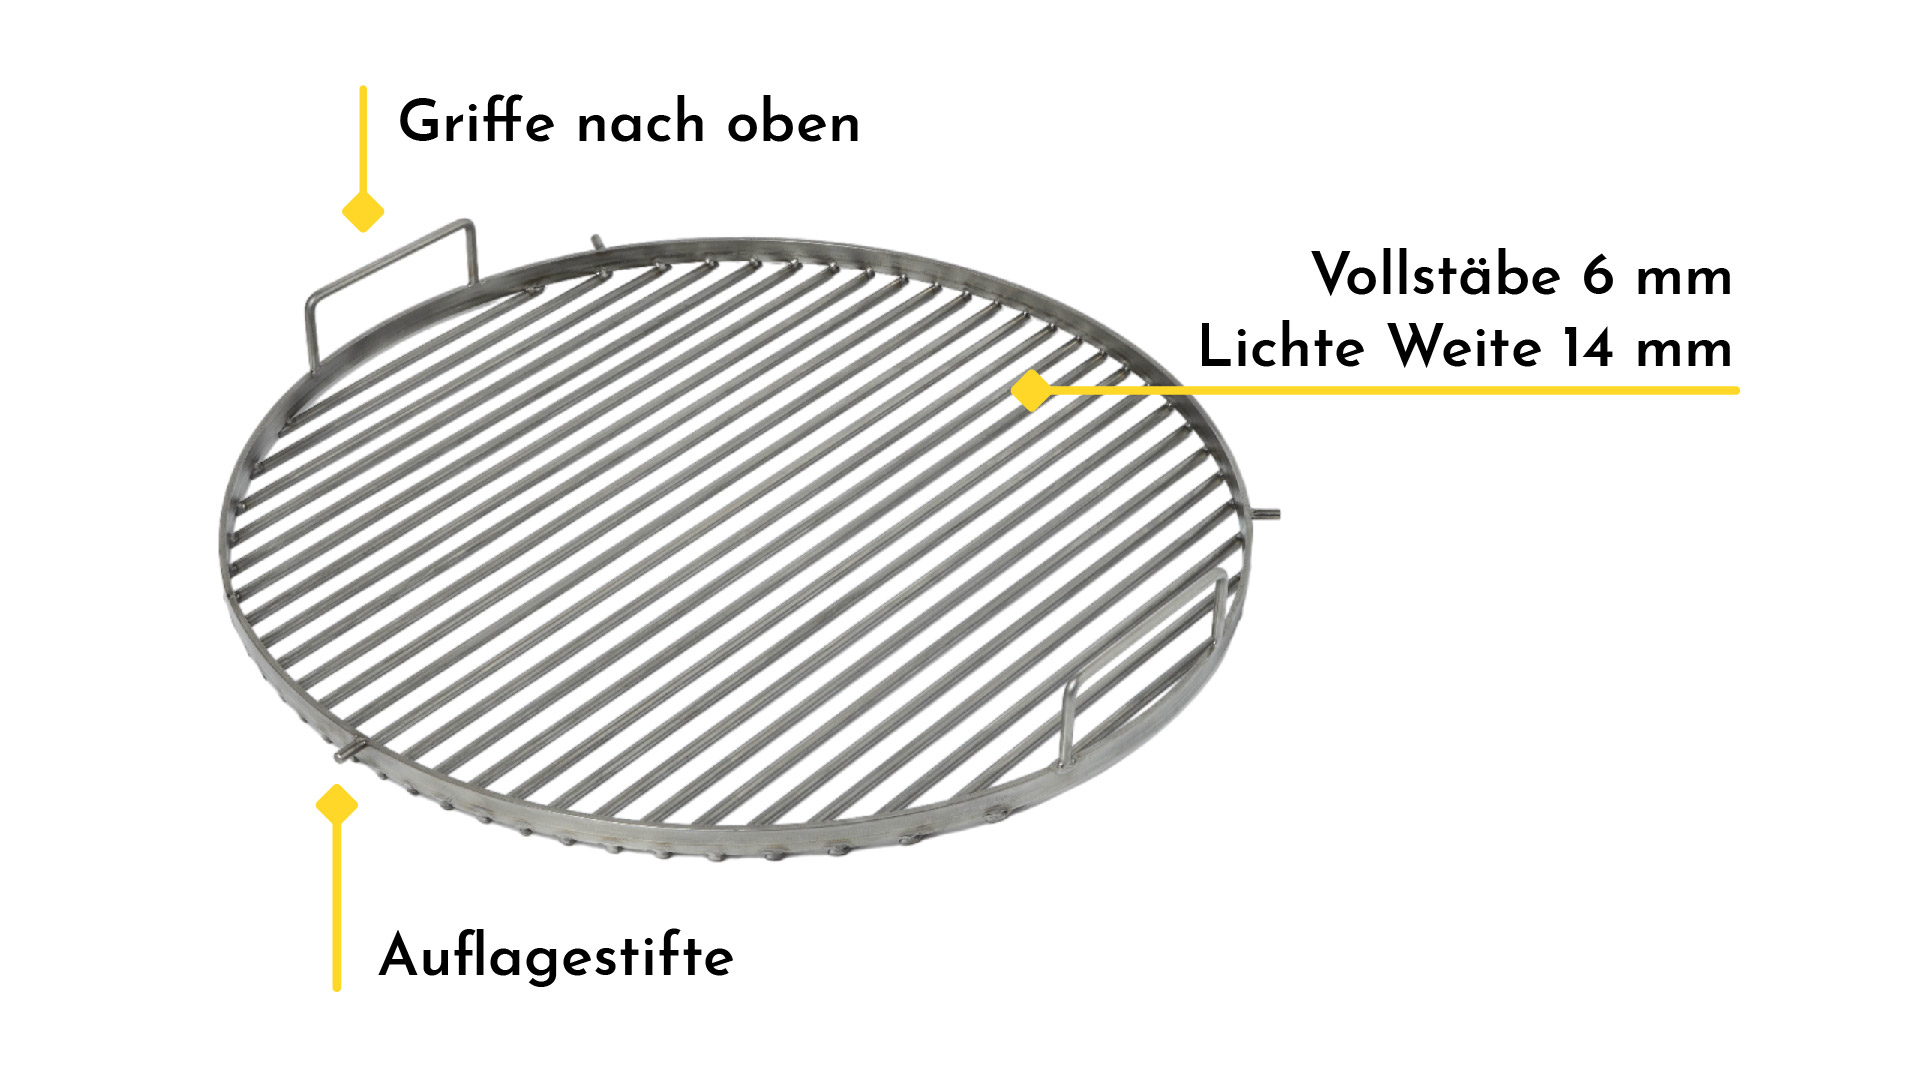 Grillrost rund Schwenkgrill Feuerschale Edelstahl 70 cm 700 mm Durchmesser